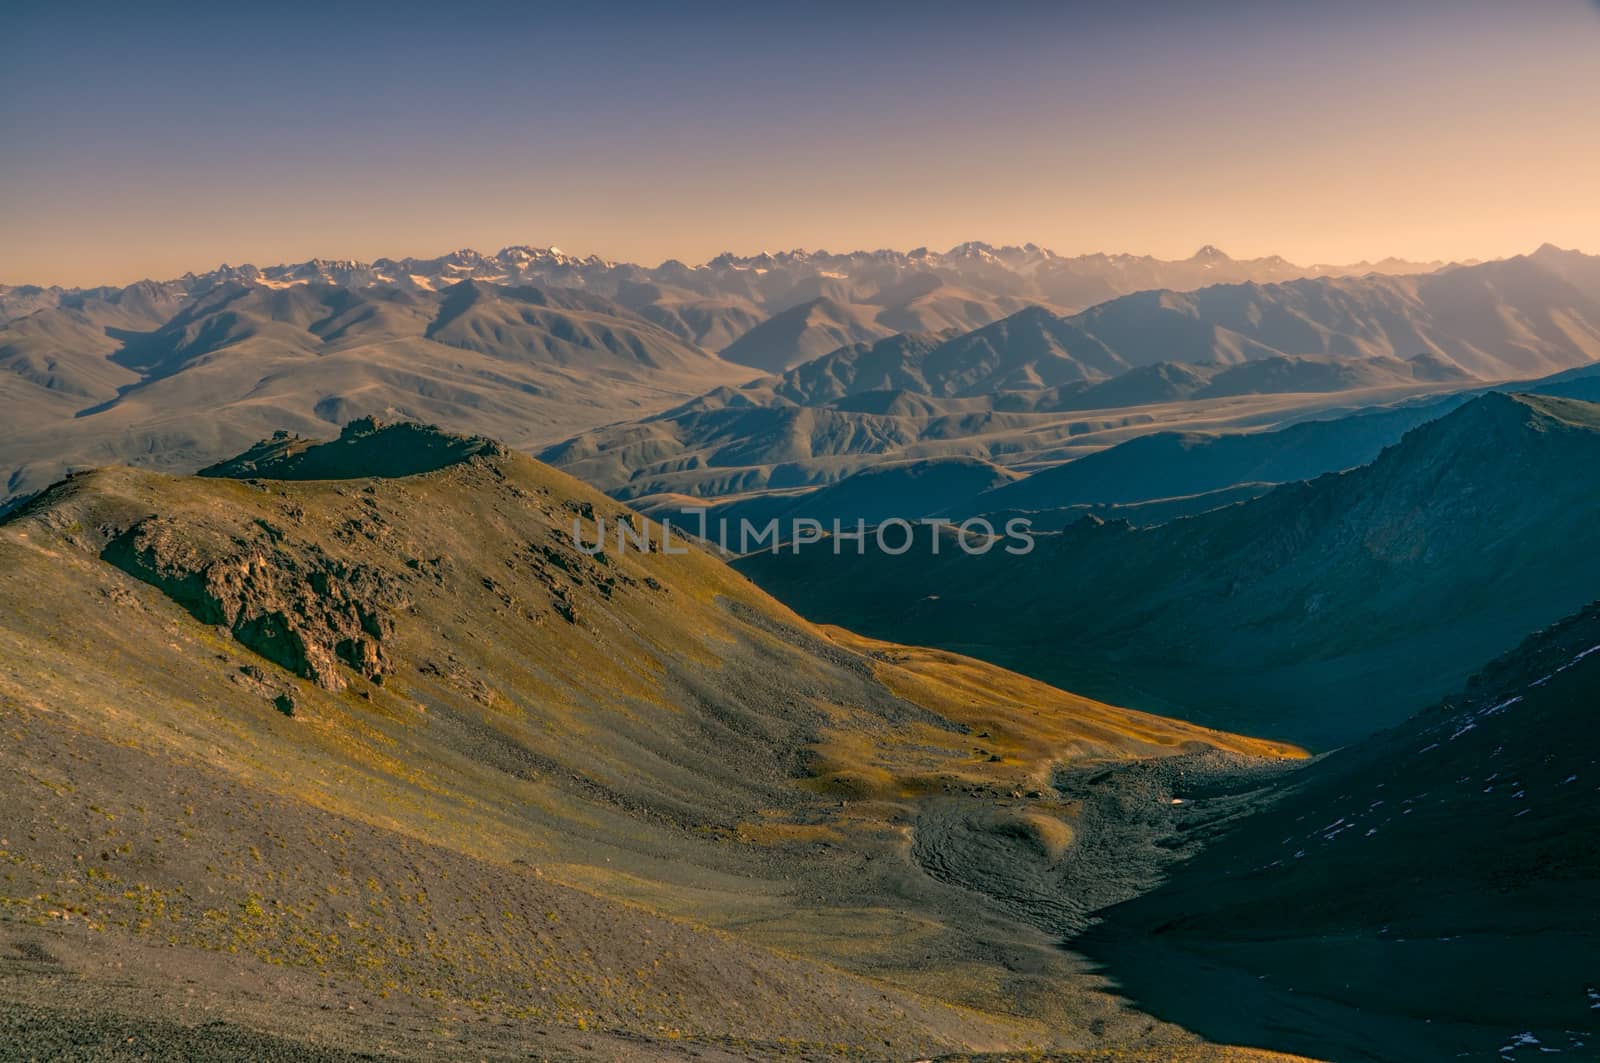 Landscape in Kyrgyzstan by MichalKnitl